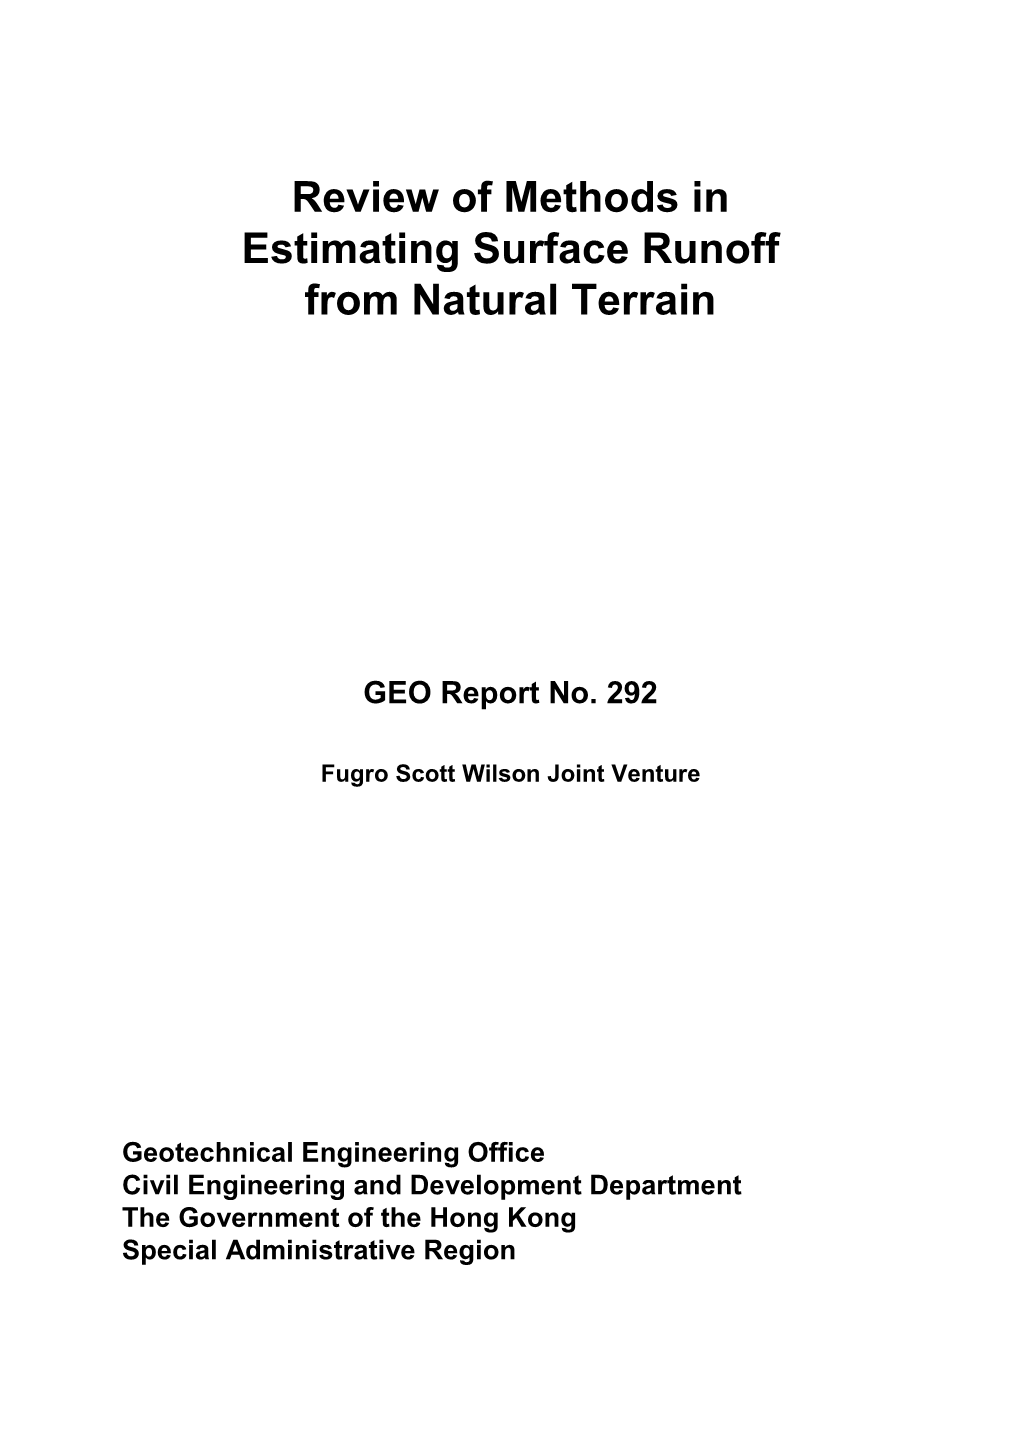 GEO Report No. 292